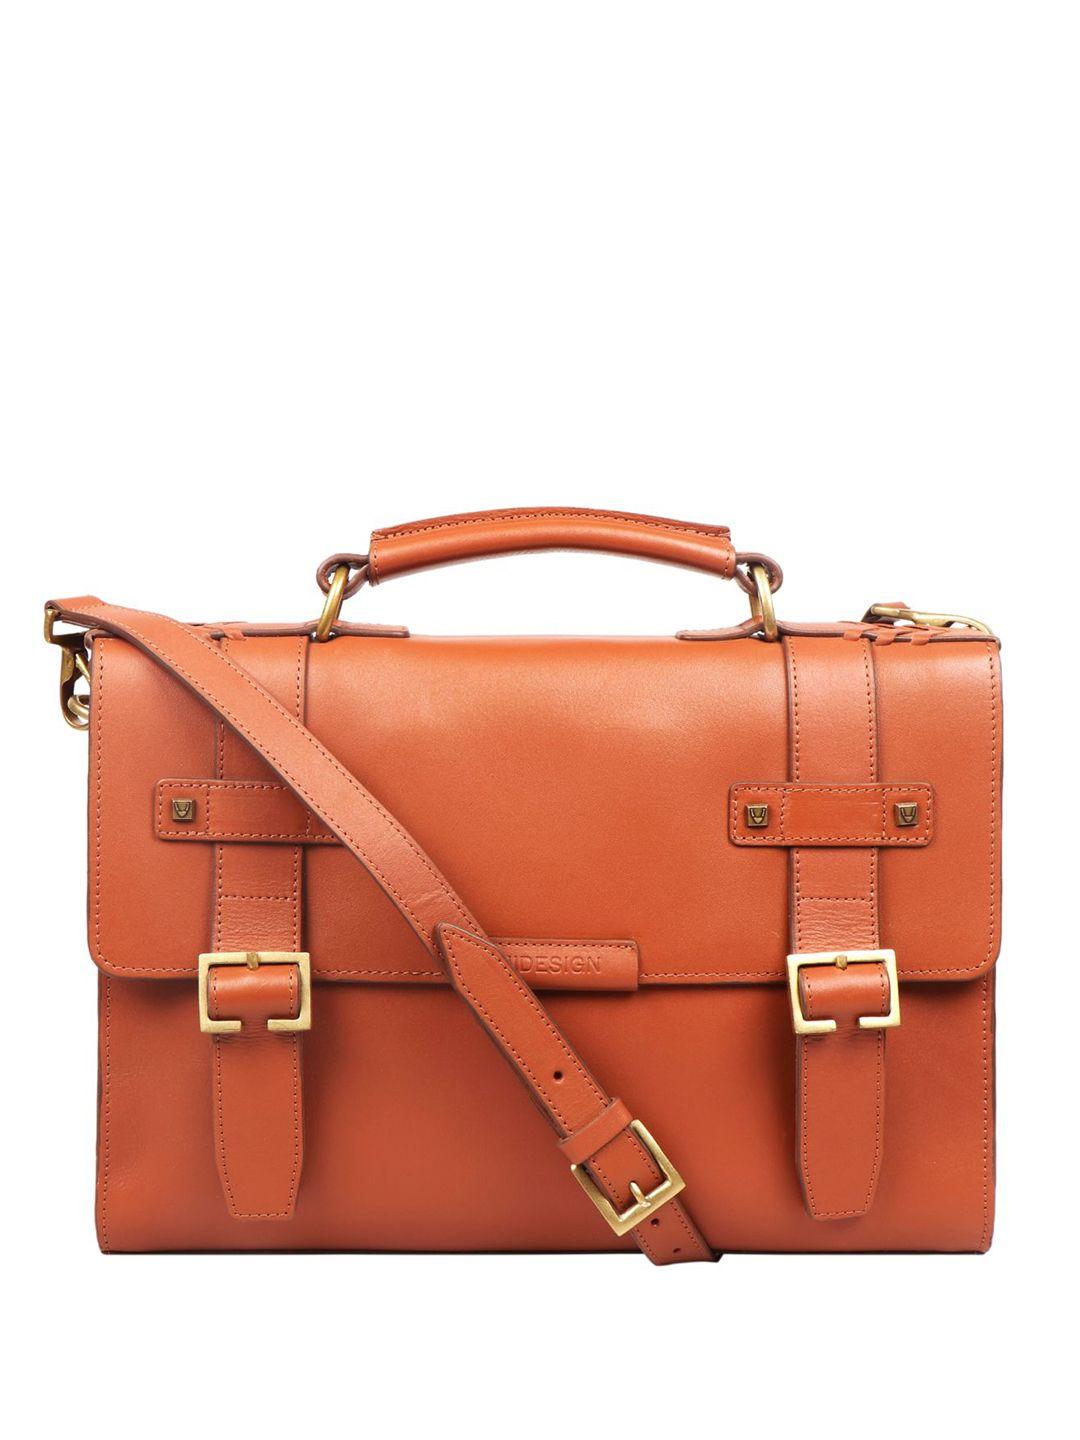 hidesign men leather briefcase messenger bag